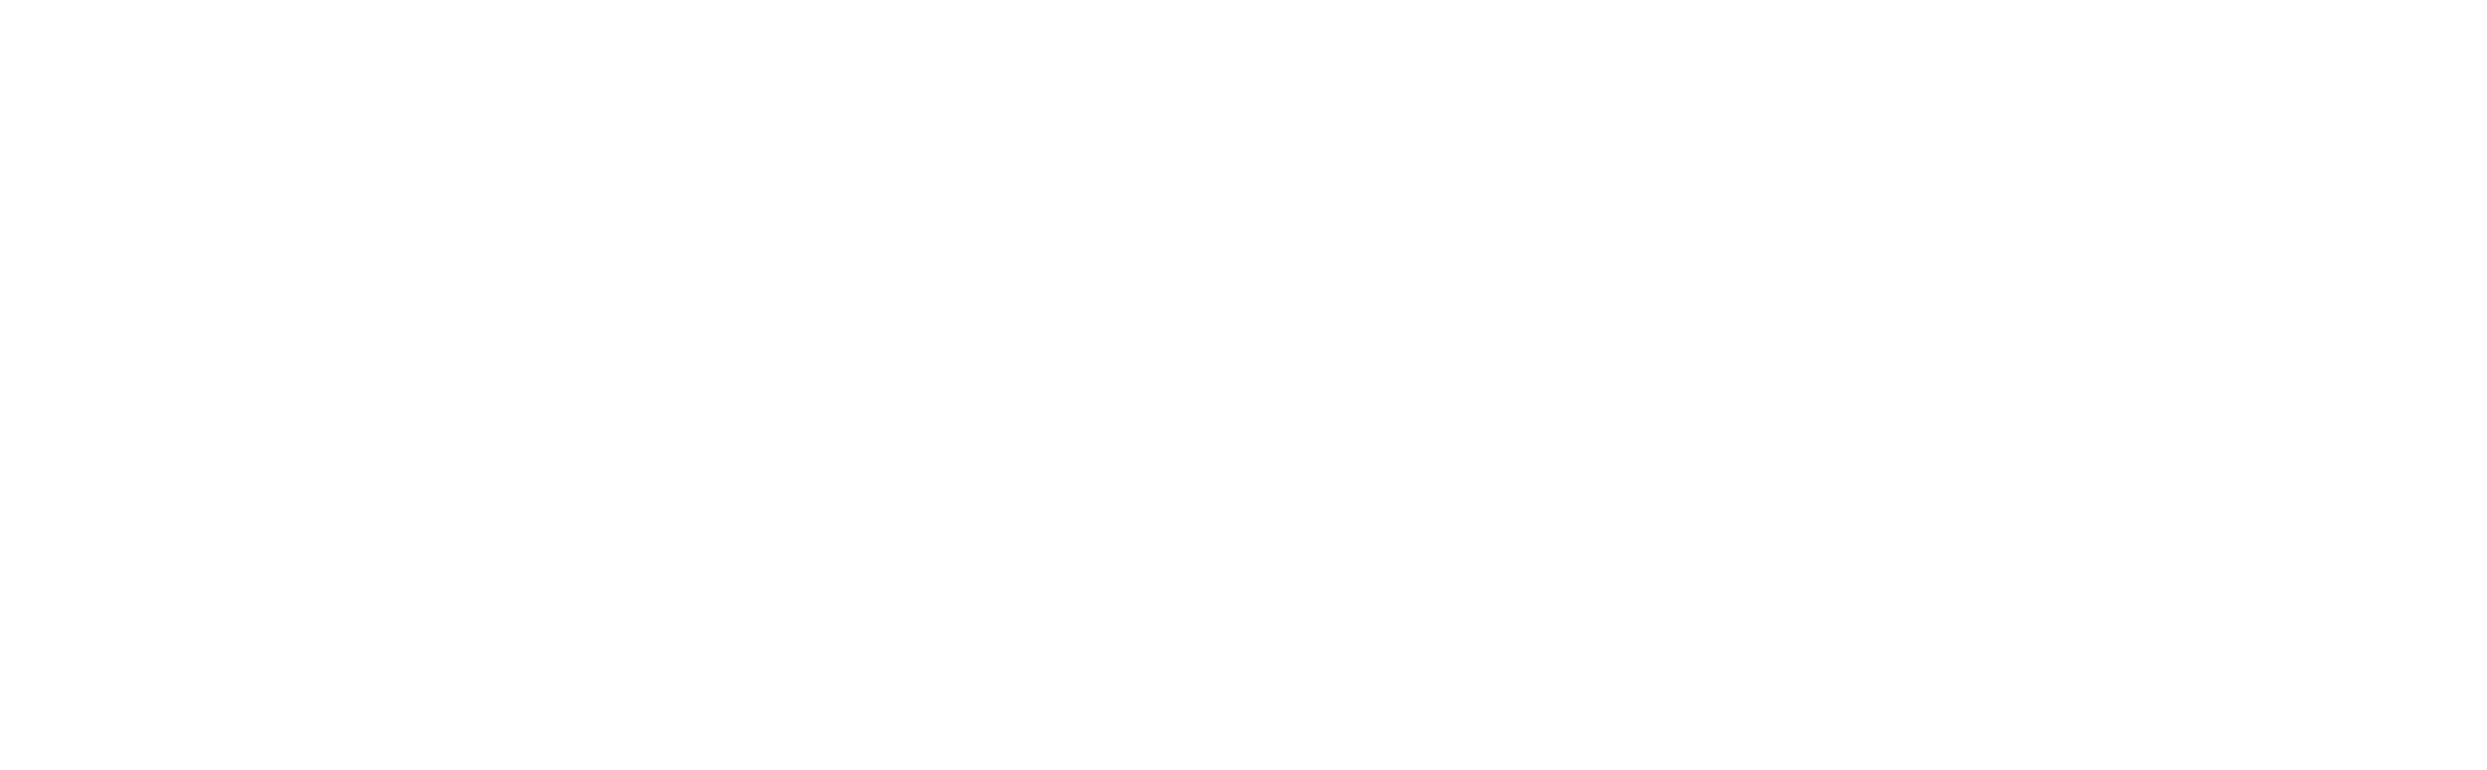 Logo that reads Elderwood in stylized font.